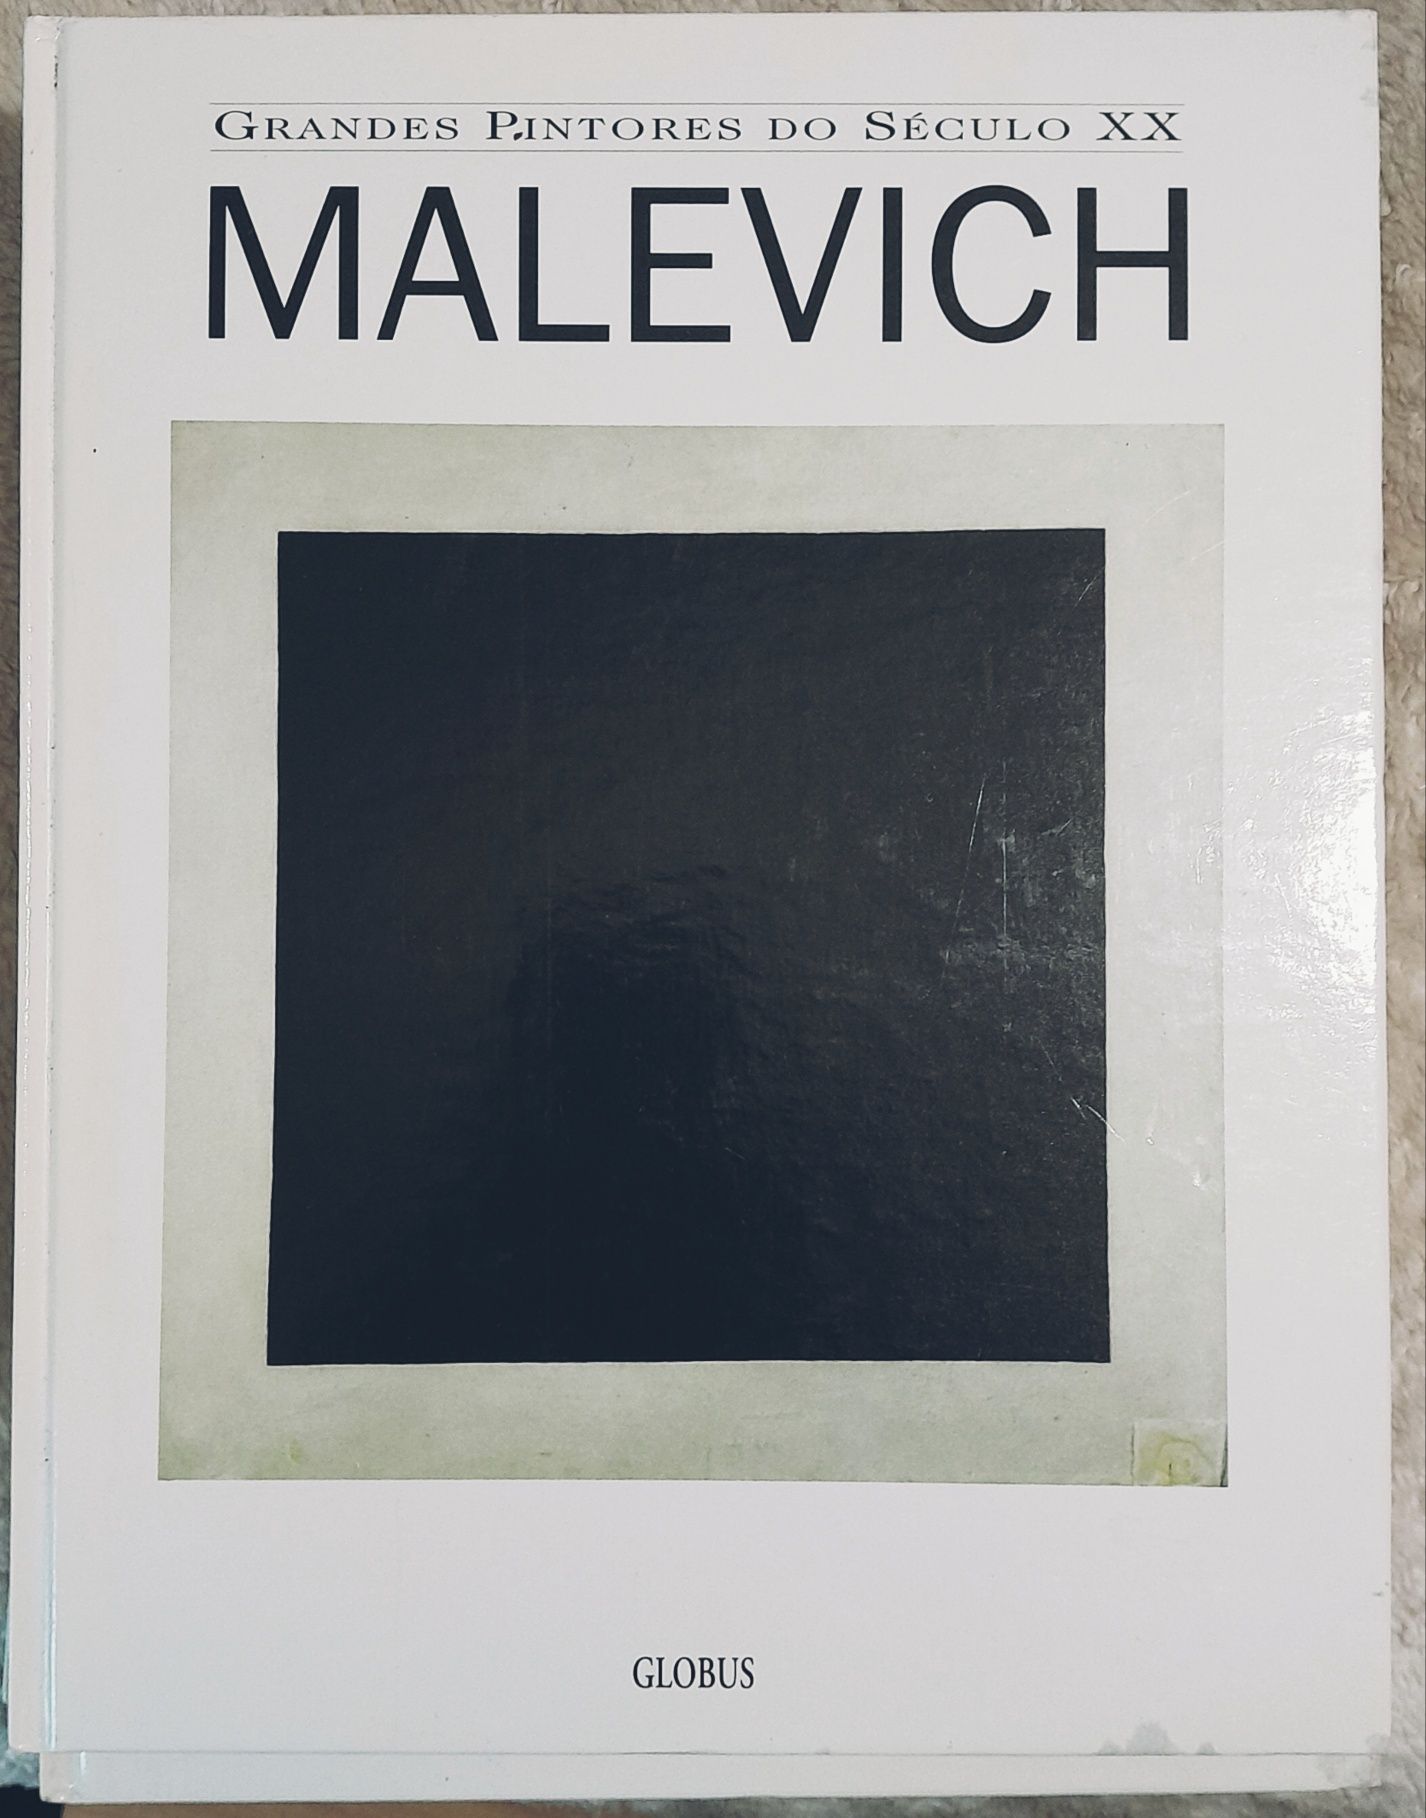 Livro "Malevich" da colecção Grandes Pintores do século XX